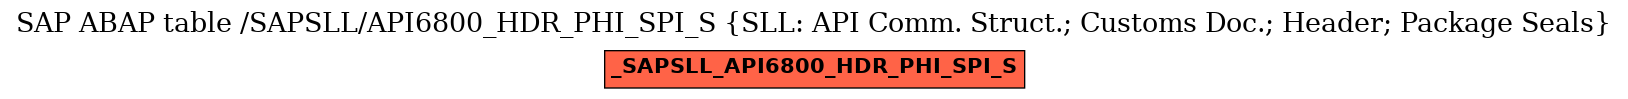 E-R Diagram for table /SAPSLL/API6800_HDR_PHI_SPI_S (SLL: API Comm. Struct.; Customs Doc.; Header; Package Seals)